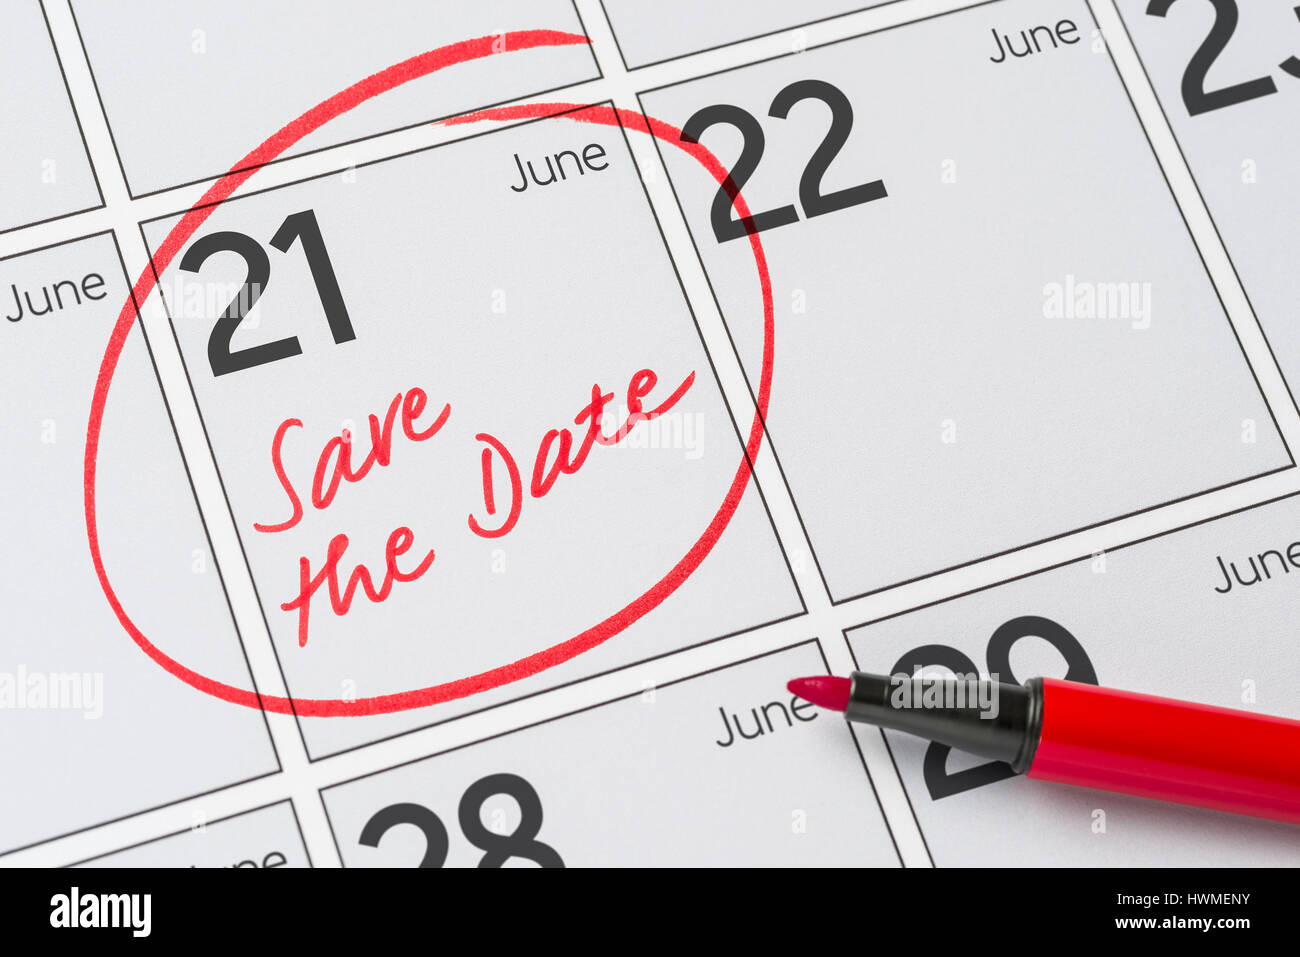 Enregistrer la date inscrite sur un calendrier - juin 21 Banque D'Images